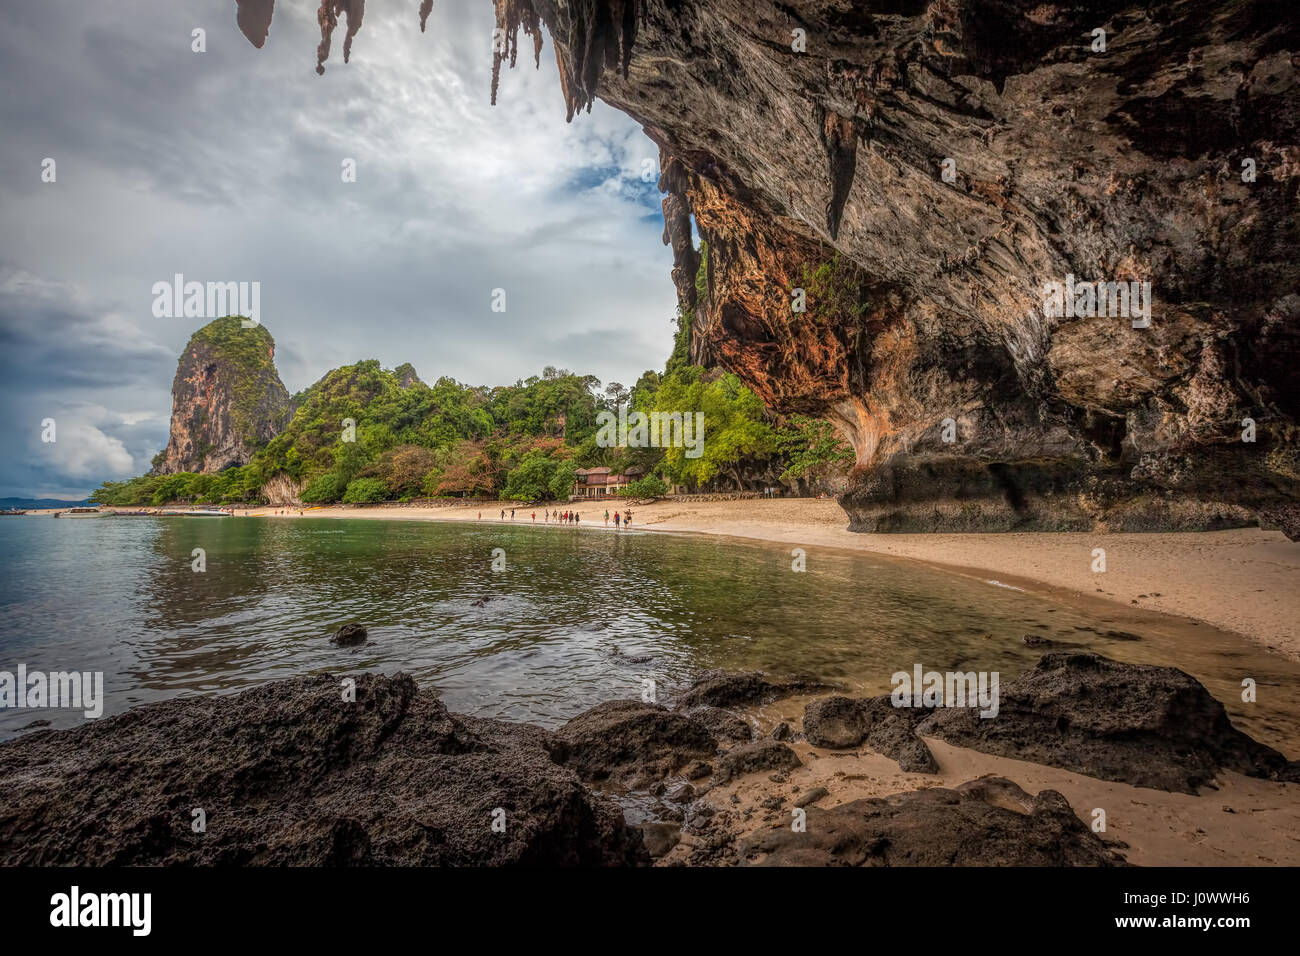 Phra Nang beach viewed from inside the Princess Cave - Railay, Ao Nang, Krabi province, Thailand Stock Photo